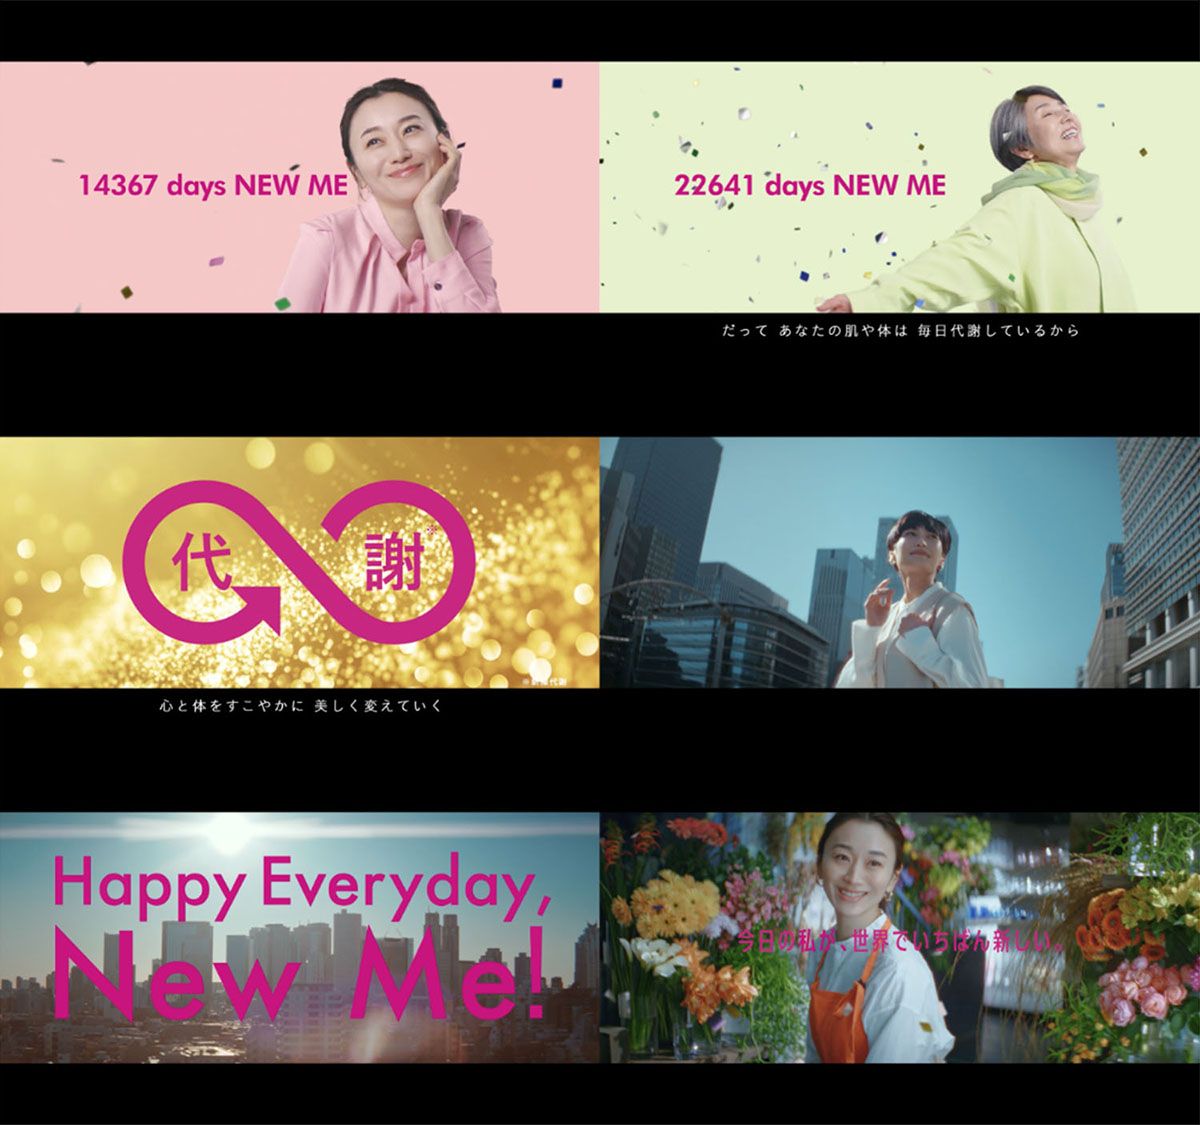 キャンペーン動画「Happy Everyday, New Me!」篇（4/15公開）ストーリーボード